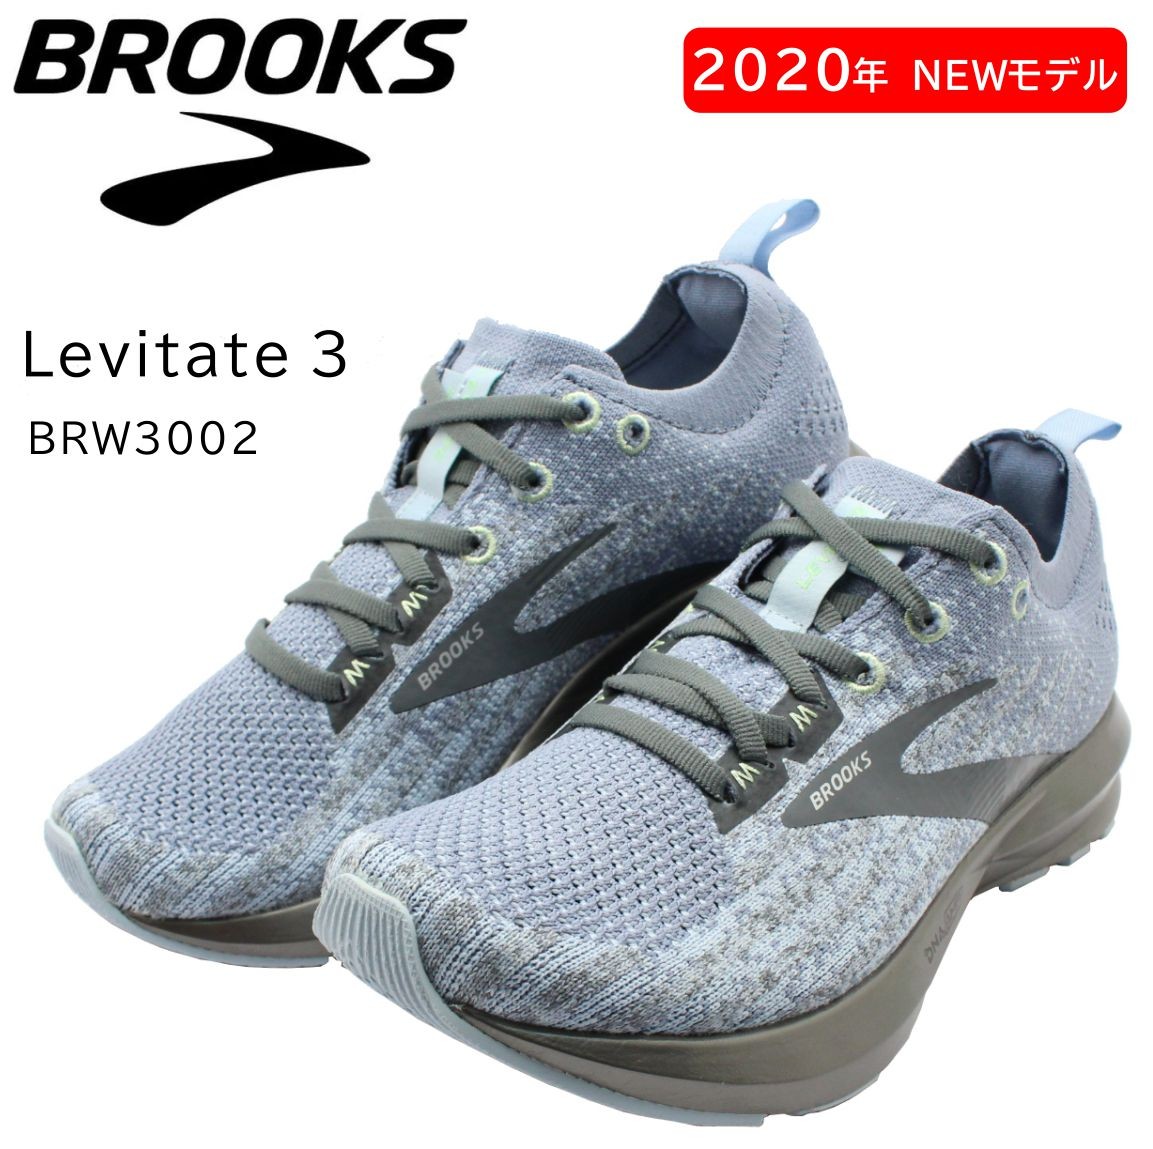 BROOKS ブルックス Levitate3 レビテイト3 レディース ランニングシューズ スニーカー BRW 3002 ライトグレー  :brw3002ltgy:ミッキー靴店 通販 